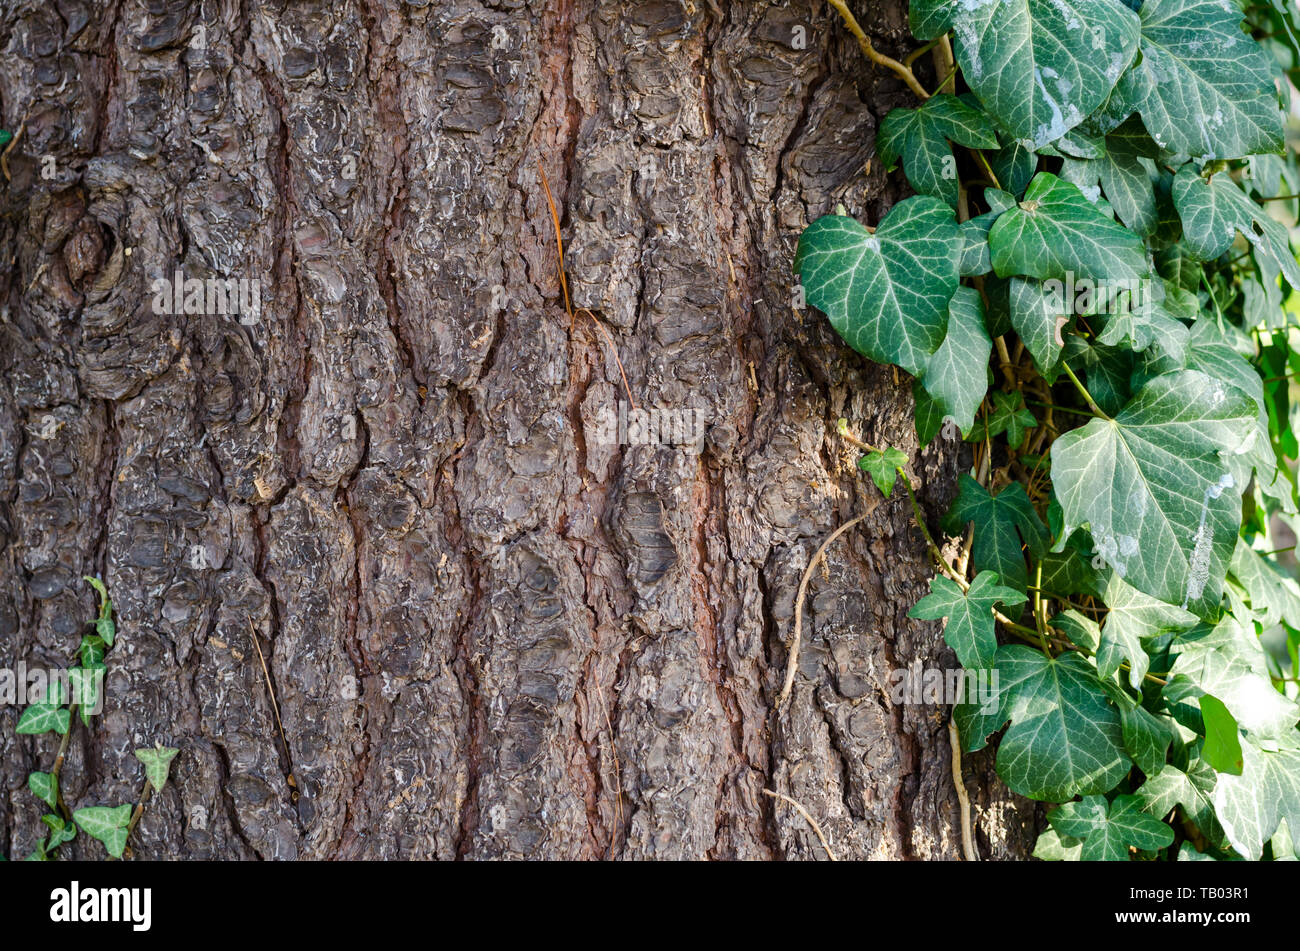 Macedonian pine (Pinus peuce) bark with green ivy. Closeup. Stock Photo